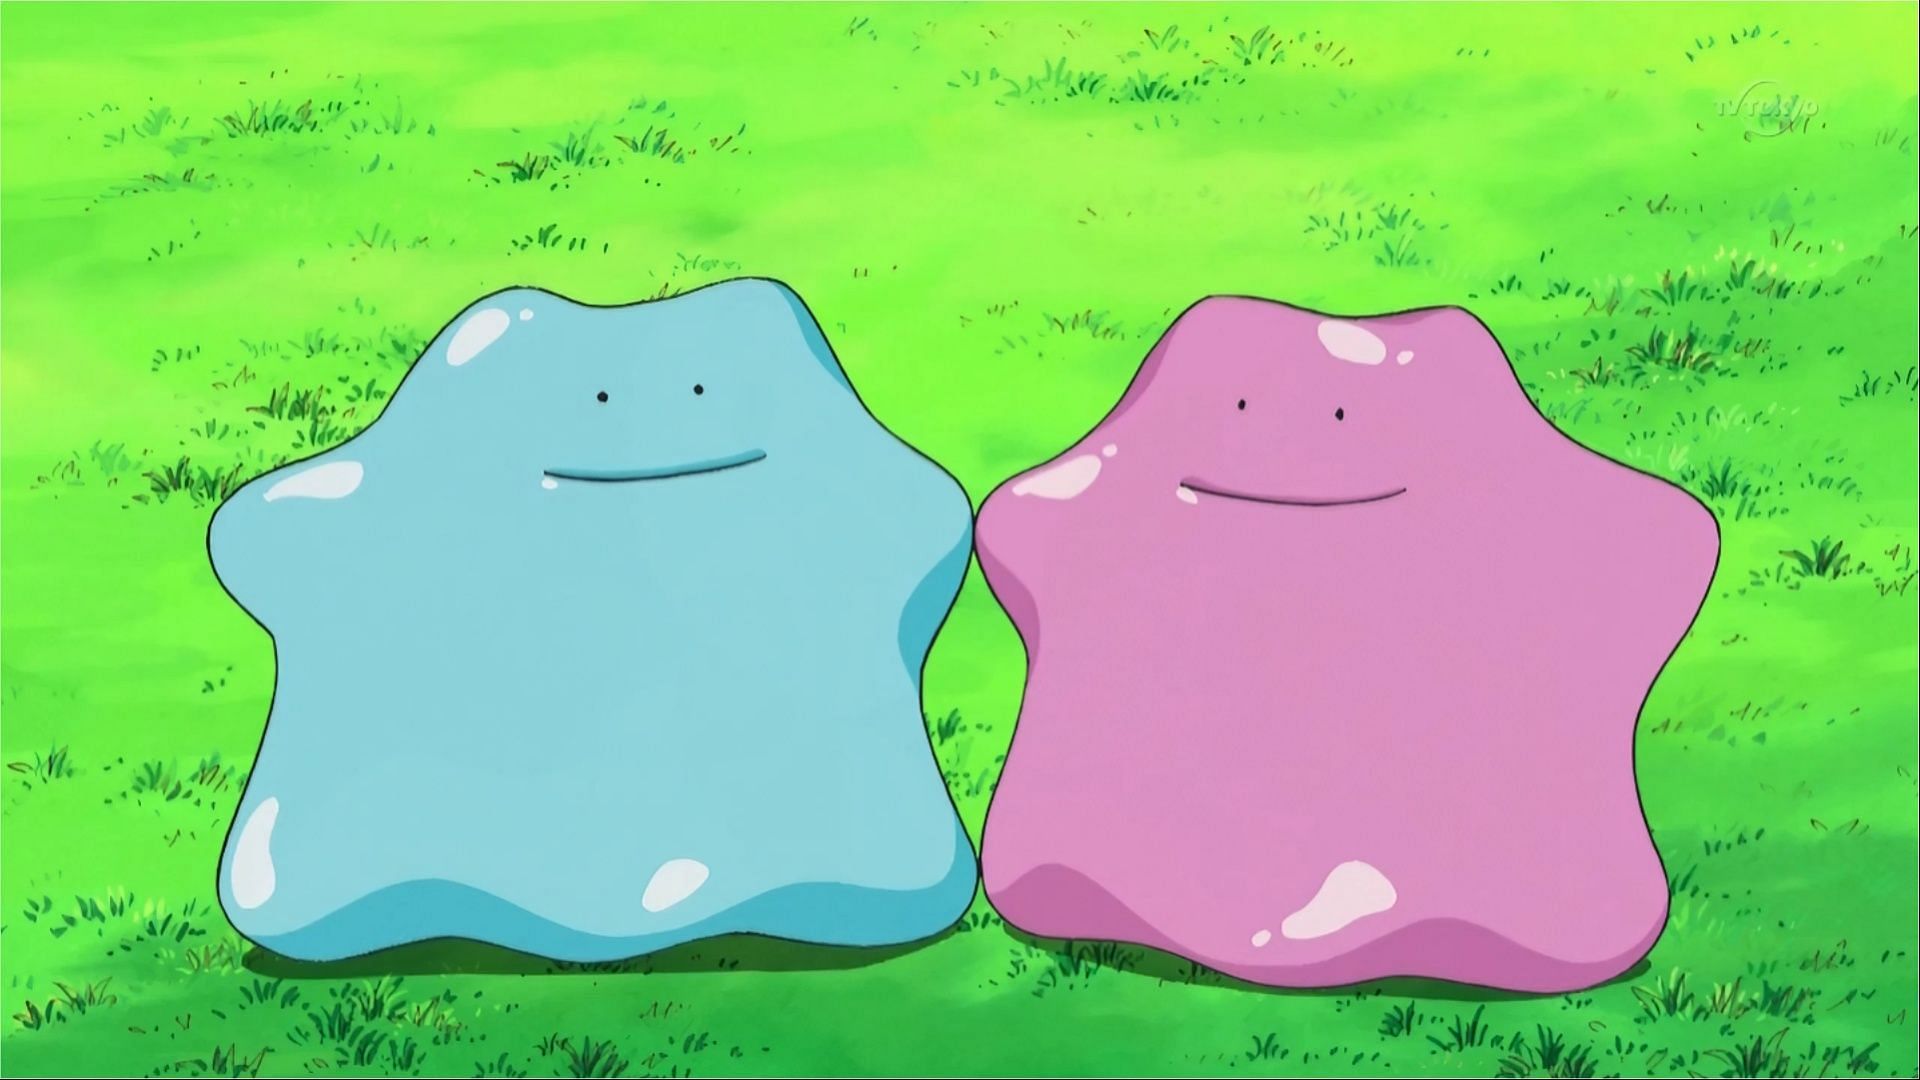 Shiny Ditto on the left (Image via The Pokemon Company)